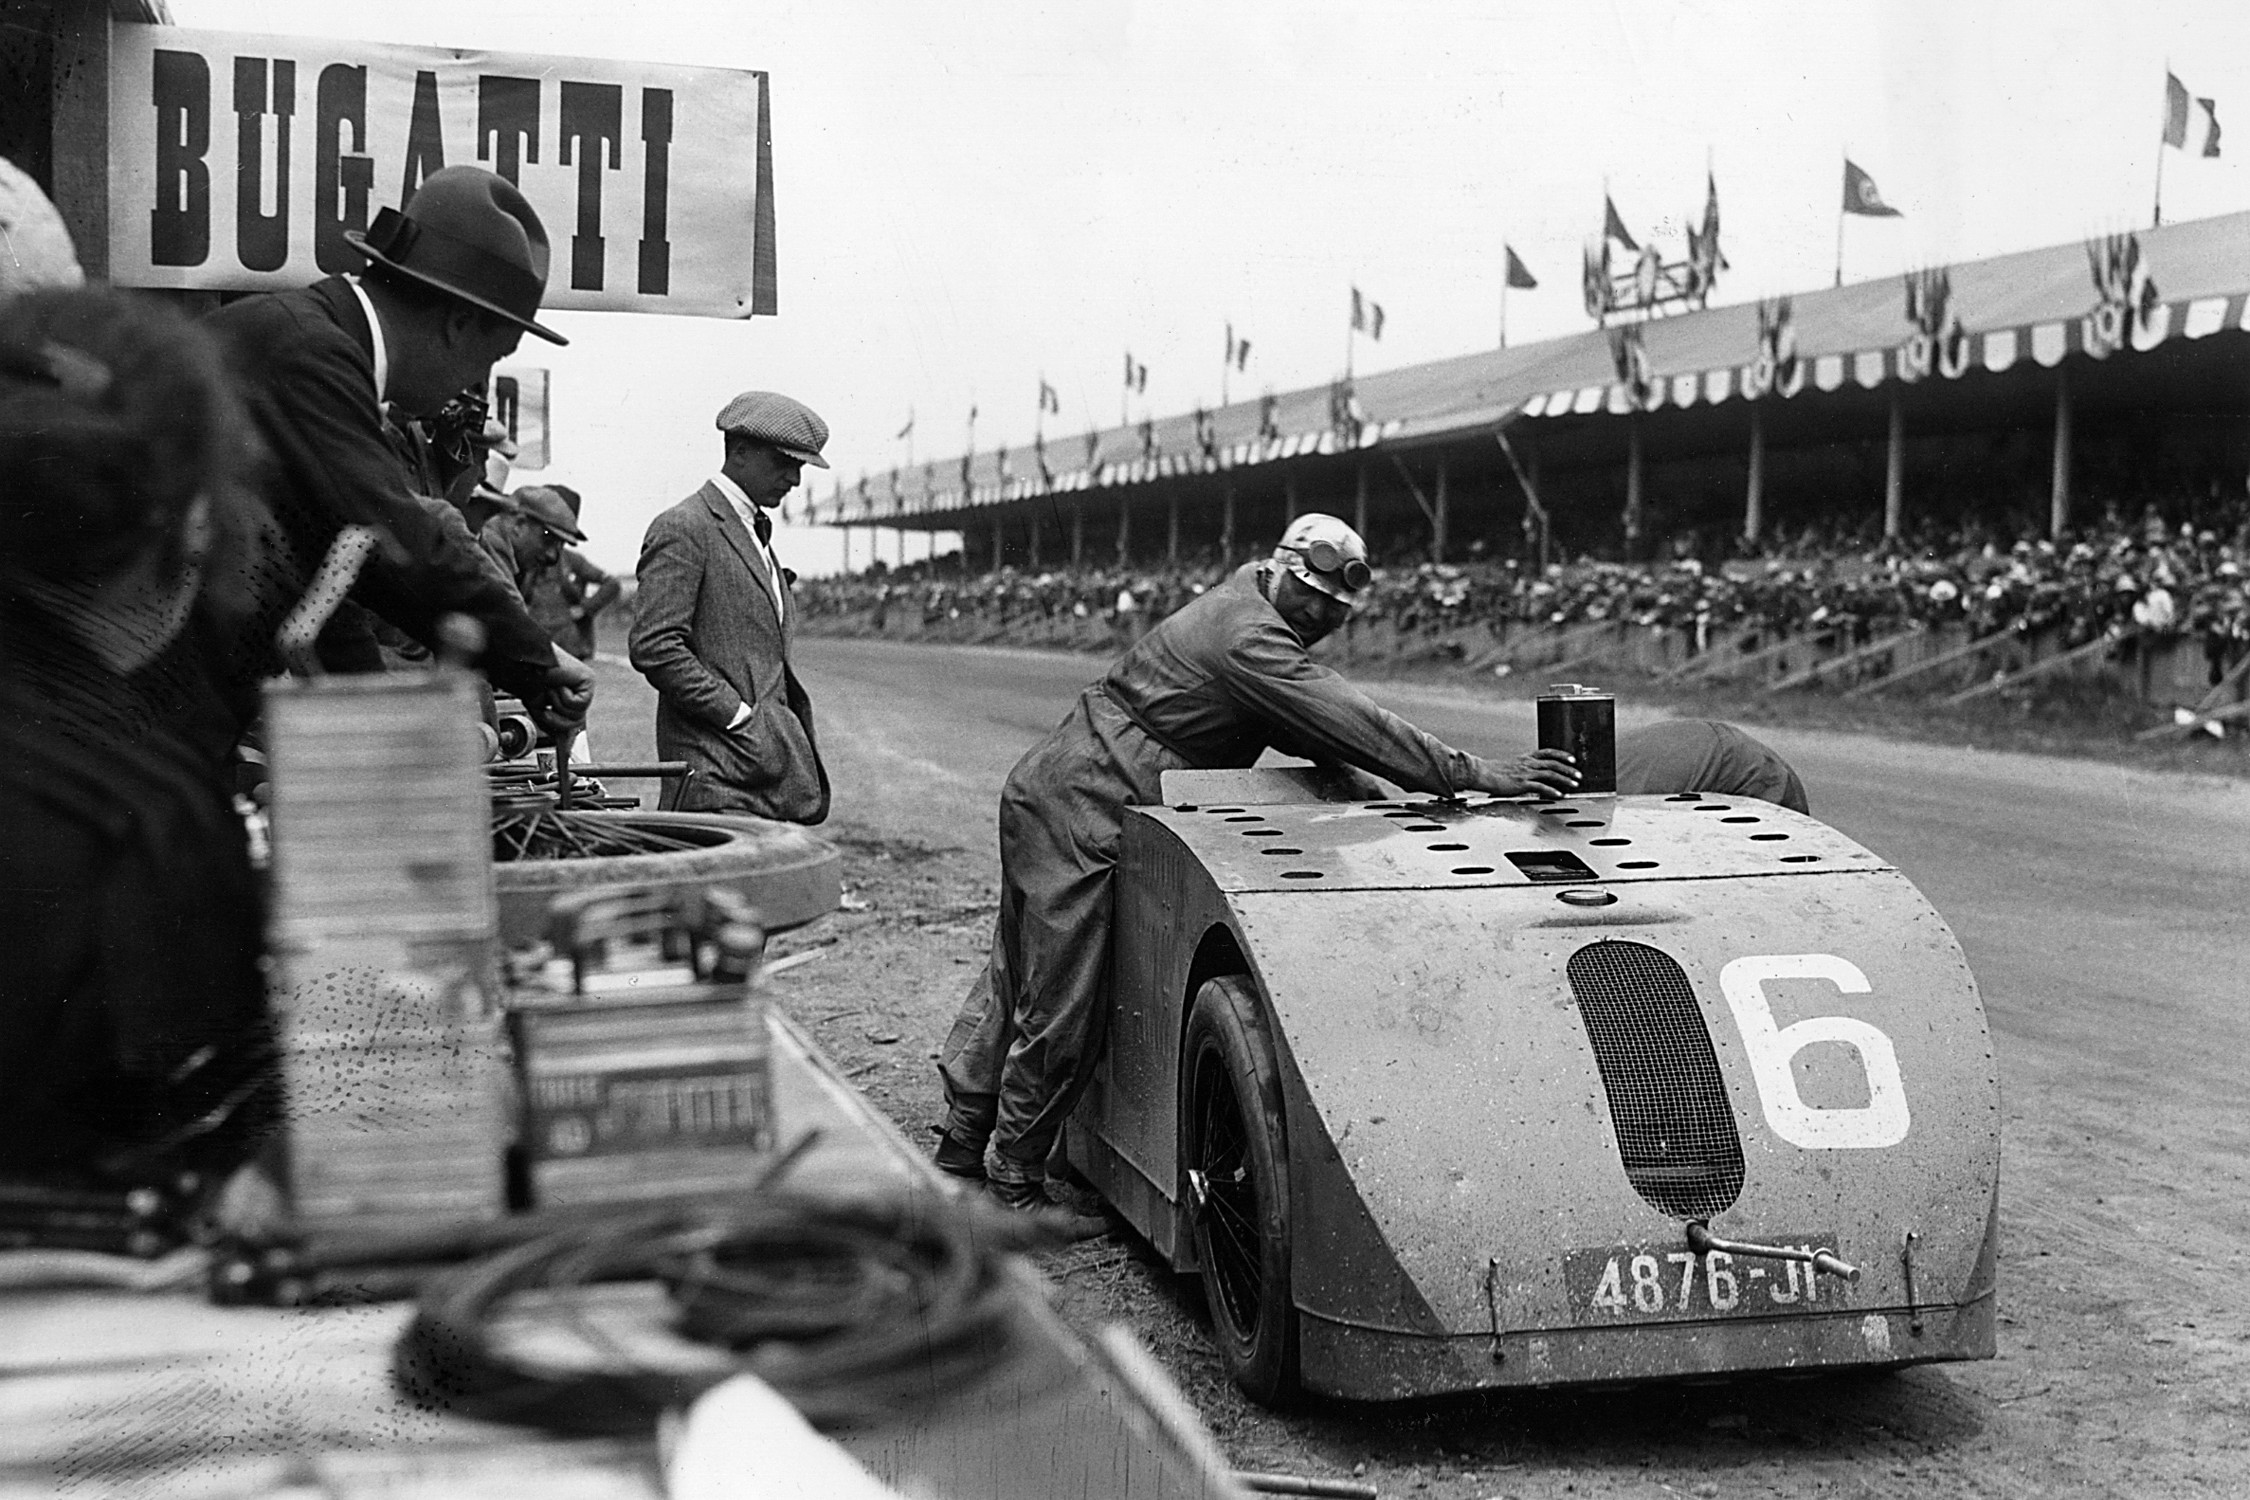 100 years ago Bugatti's Tank introduced aerodynamics to motor racing